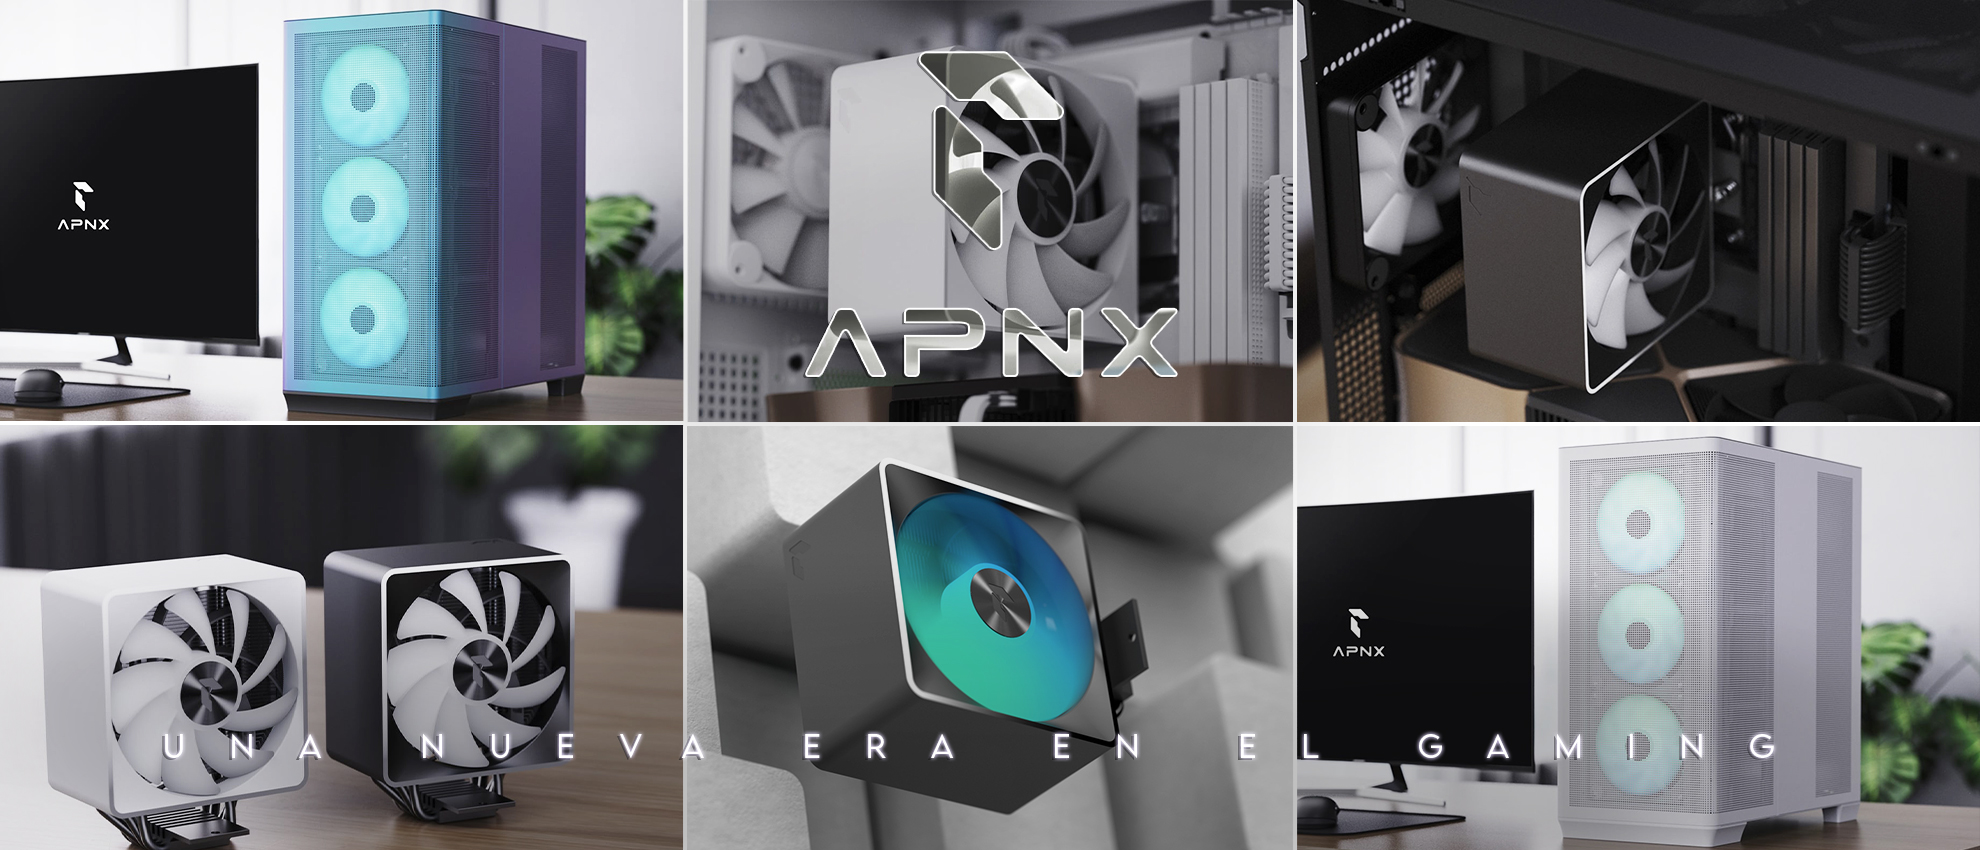 APNX nuevos productos